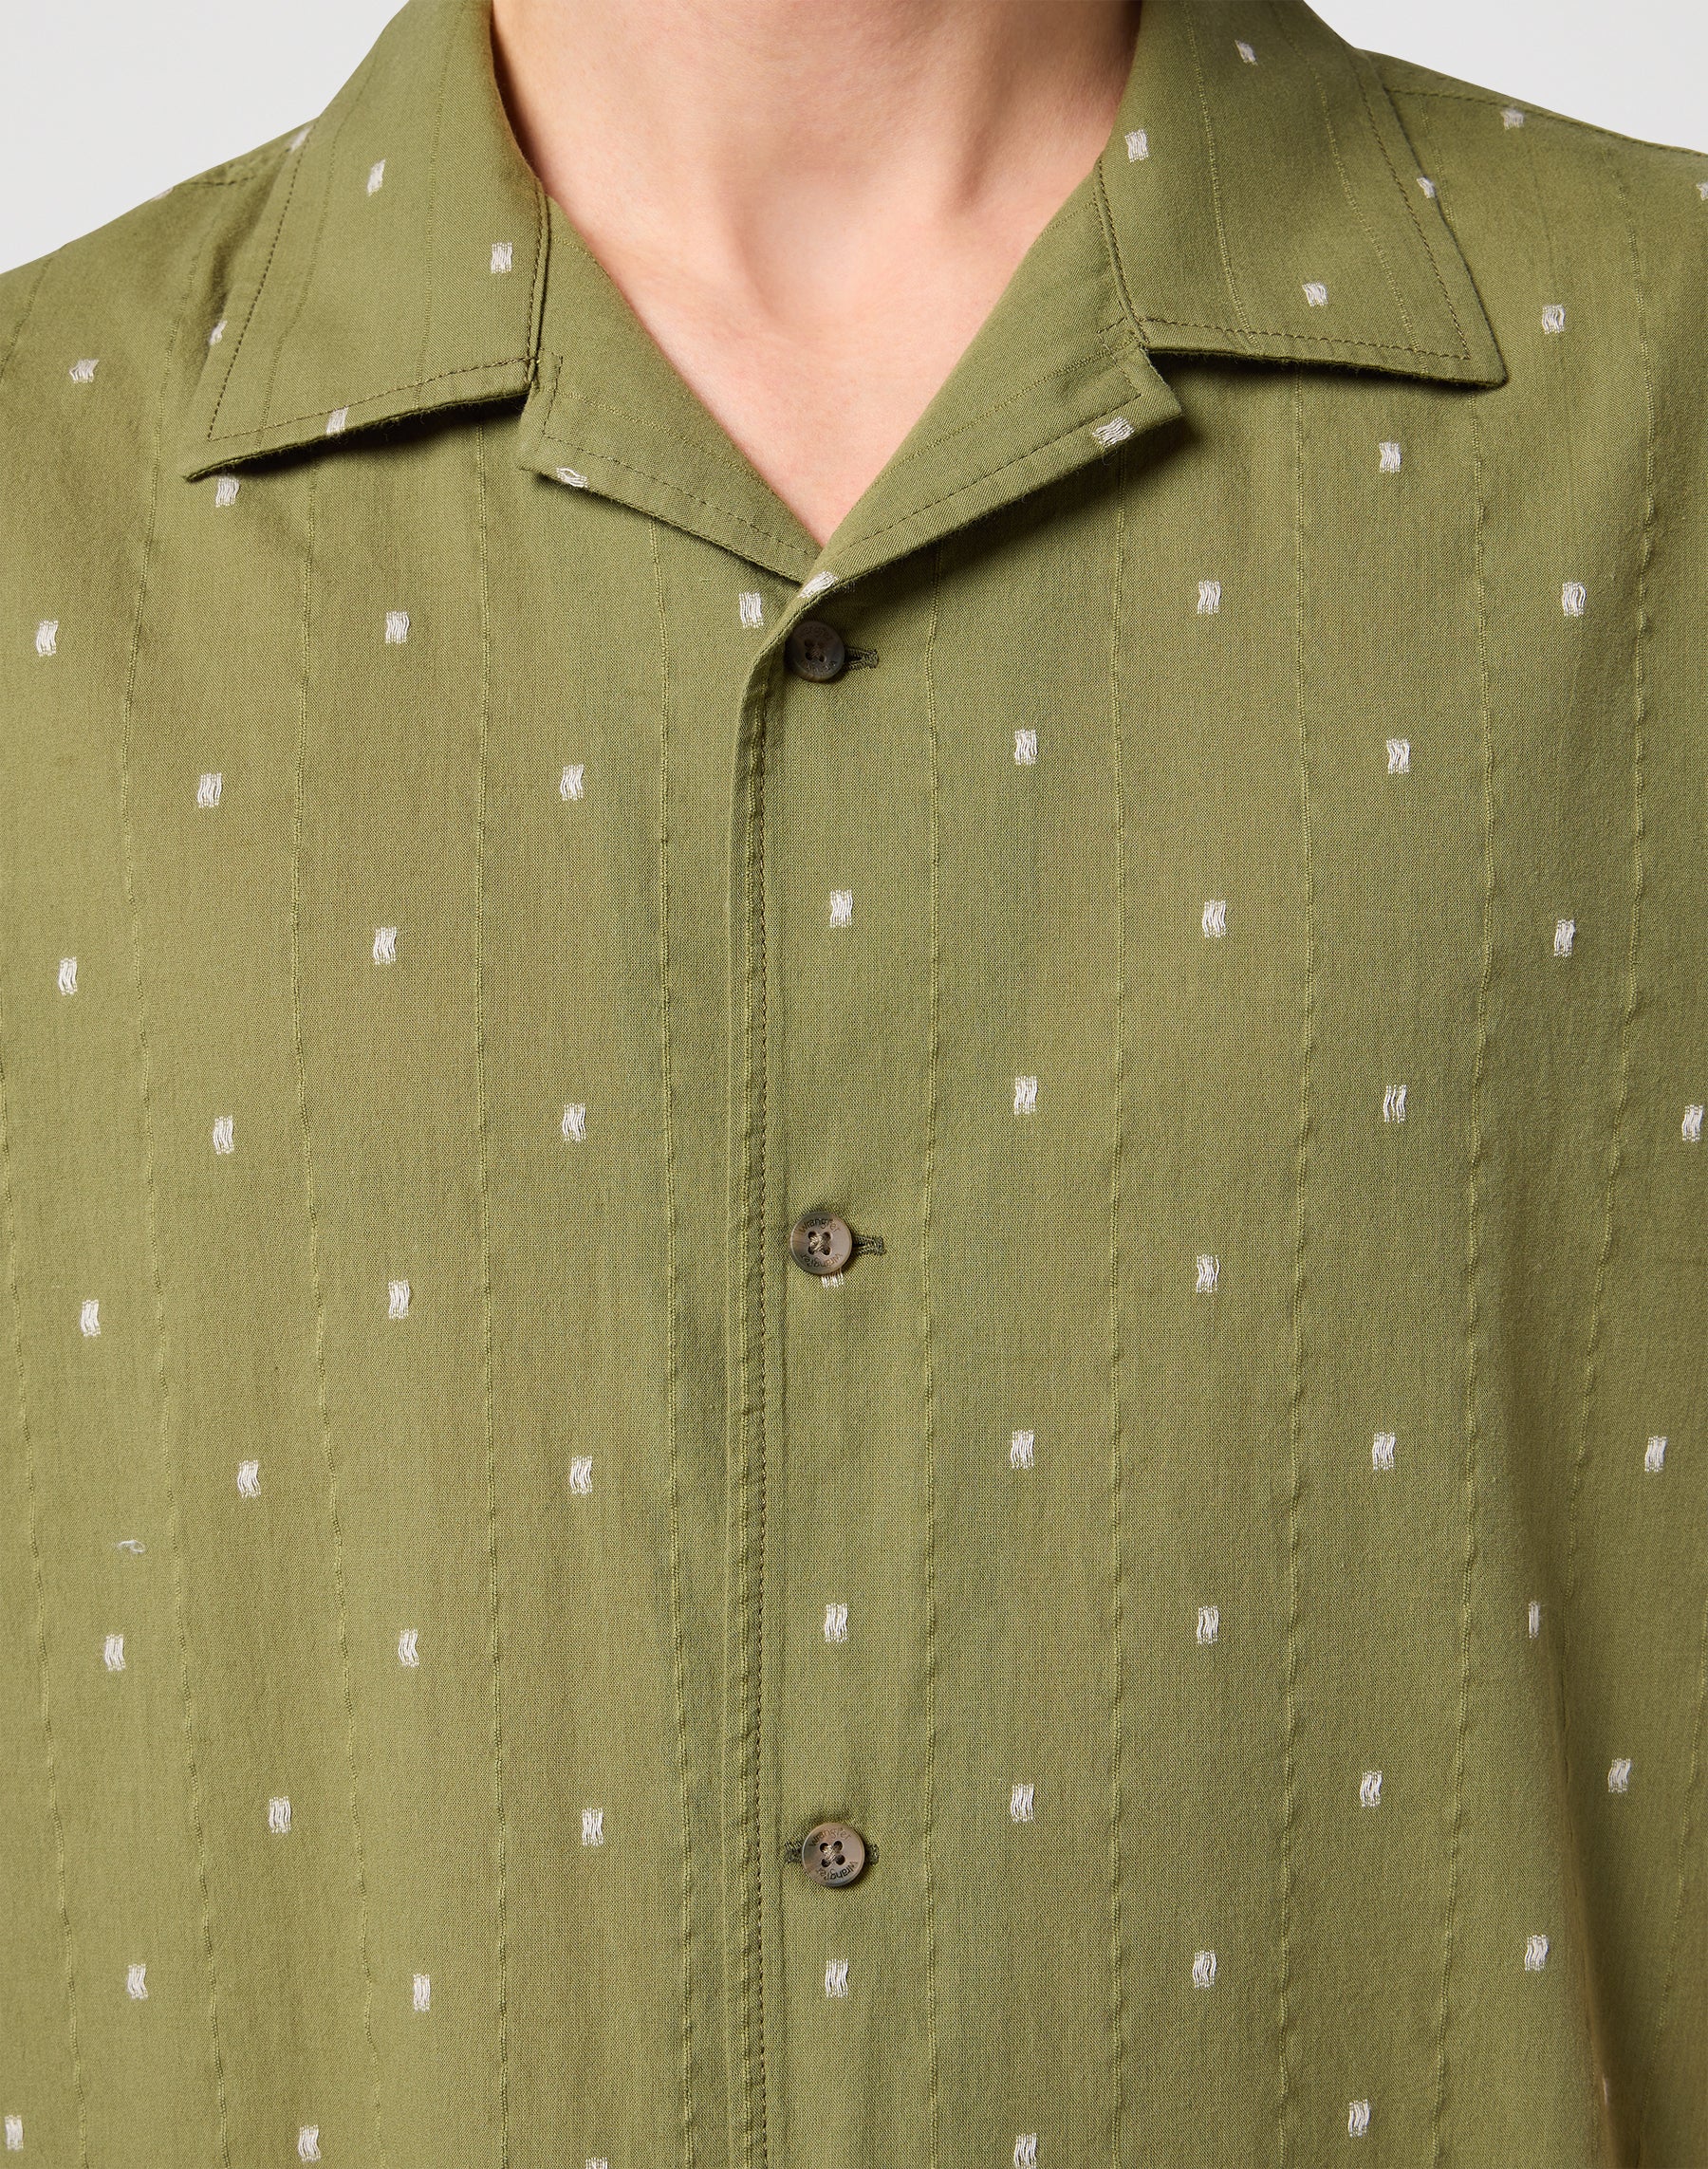 Resort Shirt in Dusty Olive Hemden Wrangler   